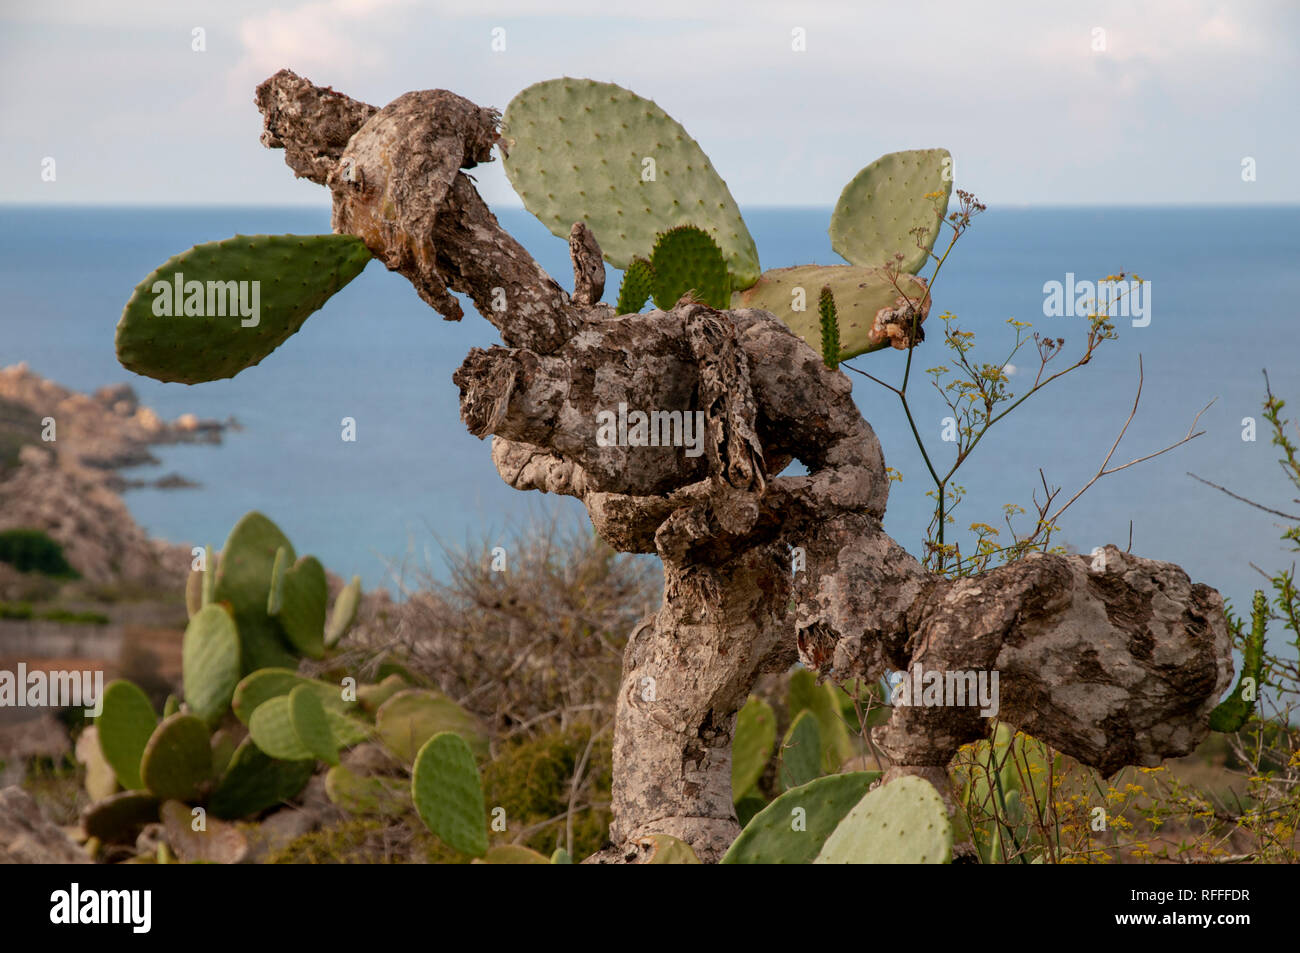 Eine Opuntia ficus-indica Kaktus (Familie Cactaceae) auf Gozo, Malta. Allgemein als Feigenkaktus, Indische Feige, Barbary Bild bekannt. Stockfoto